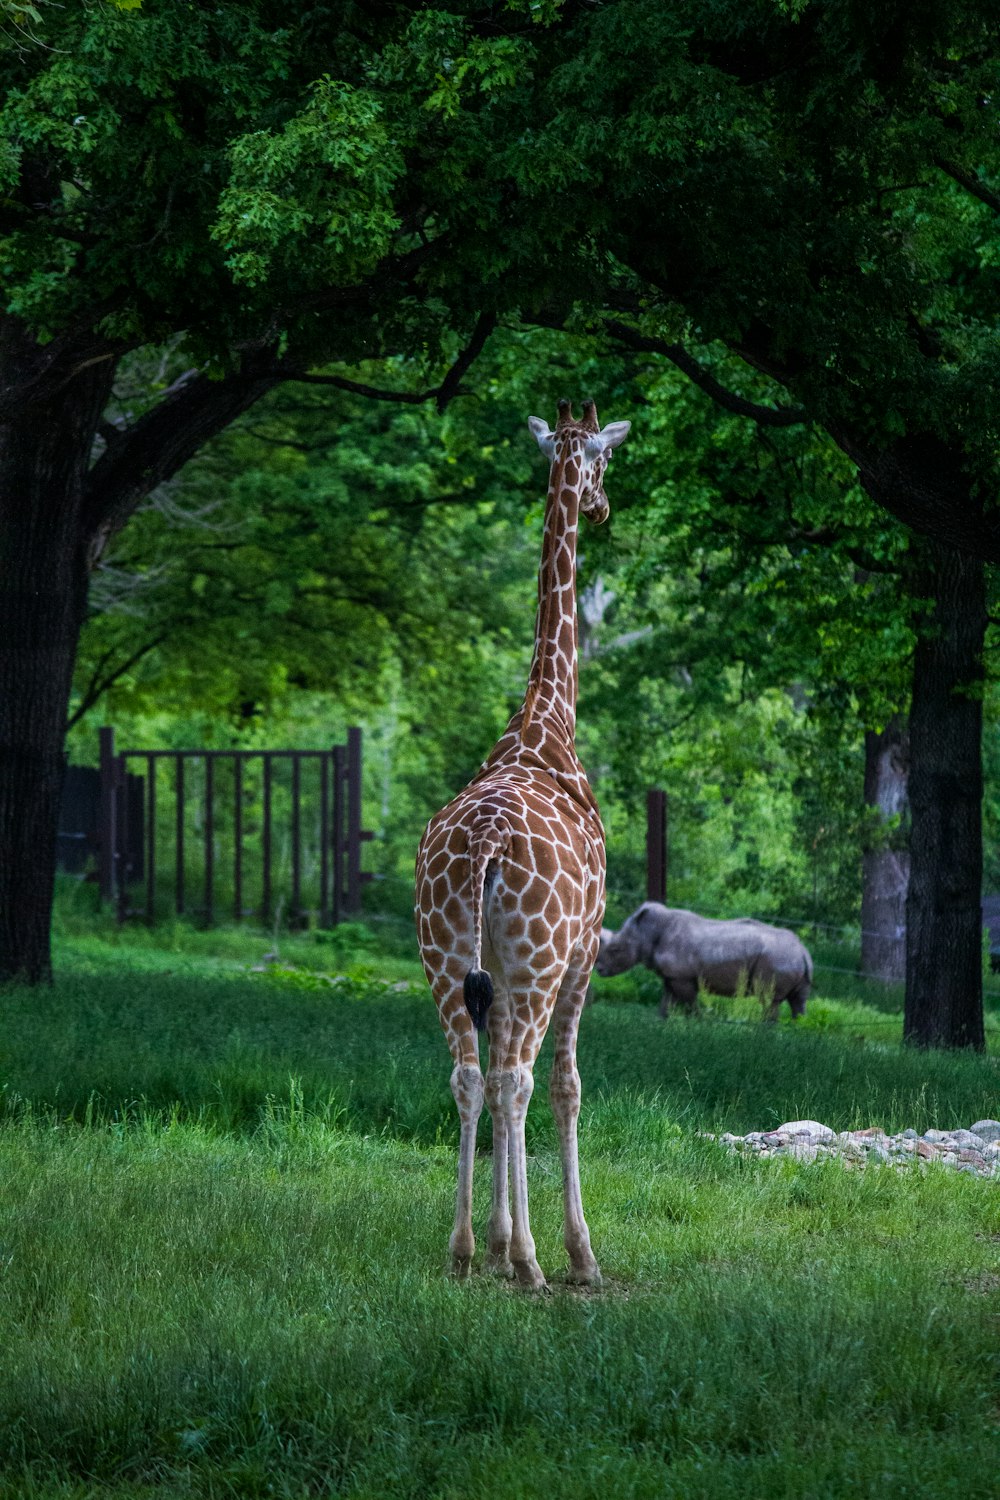 緑の草に囲まれた茶色と黒のアヒルの写真 Unsplashで見つけるヘンリー ドーリー動物園の無料写真